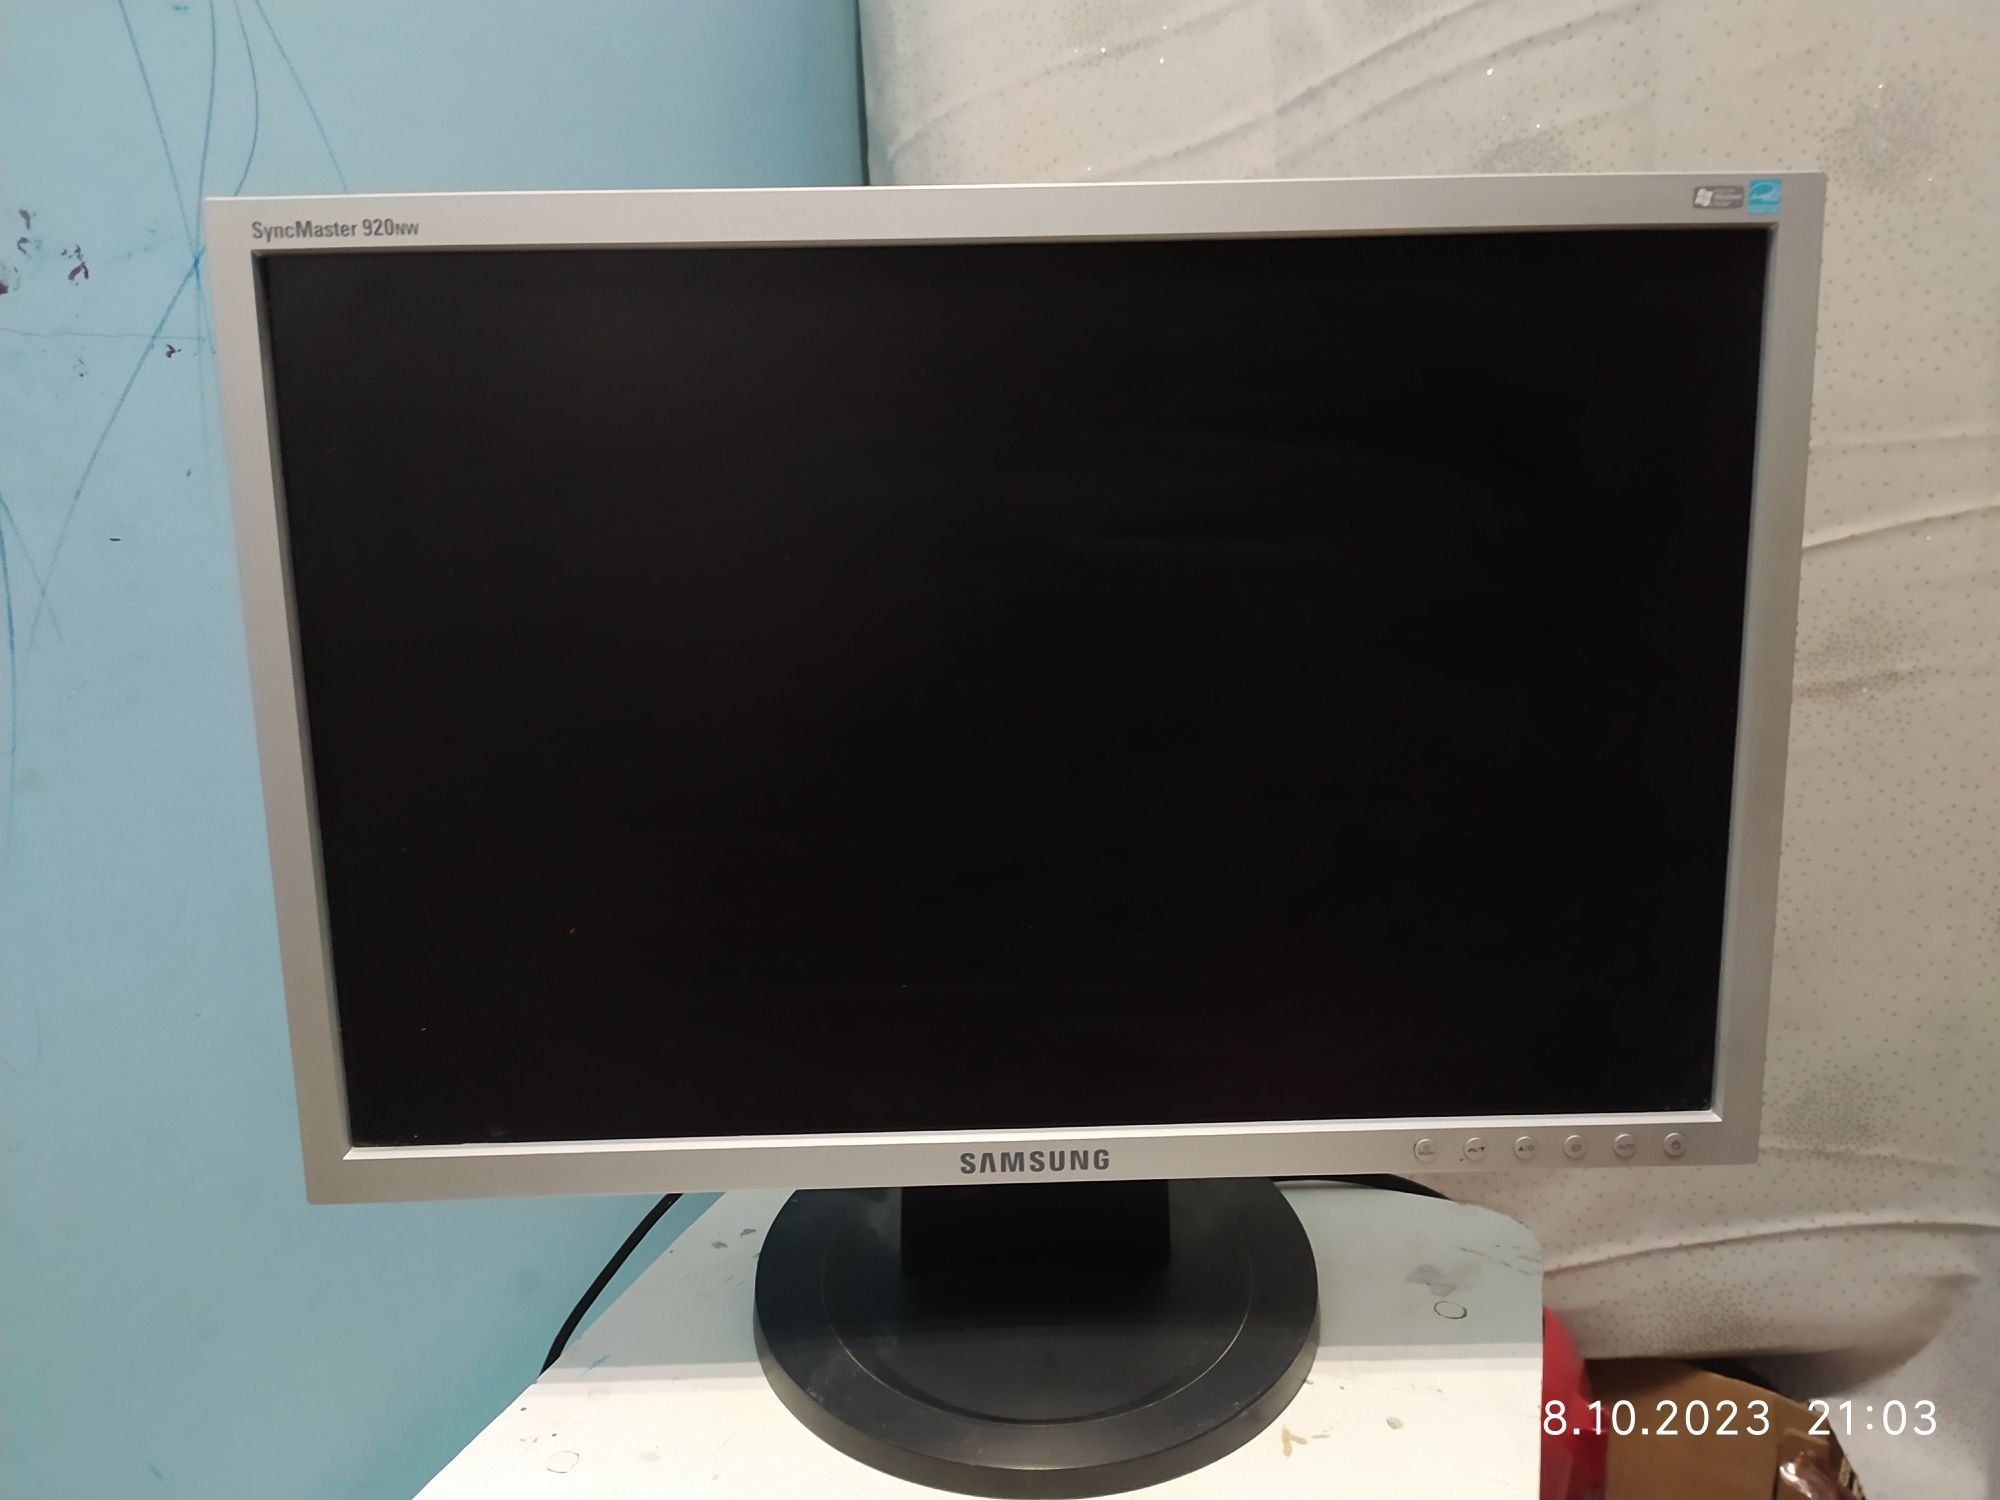 Monitor LCD Samsung 17 cali SyncMaster 920nw.